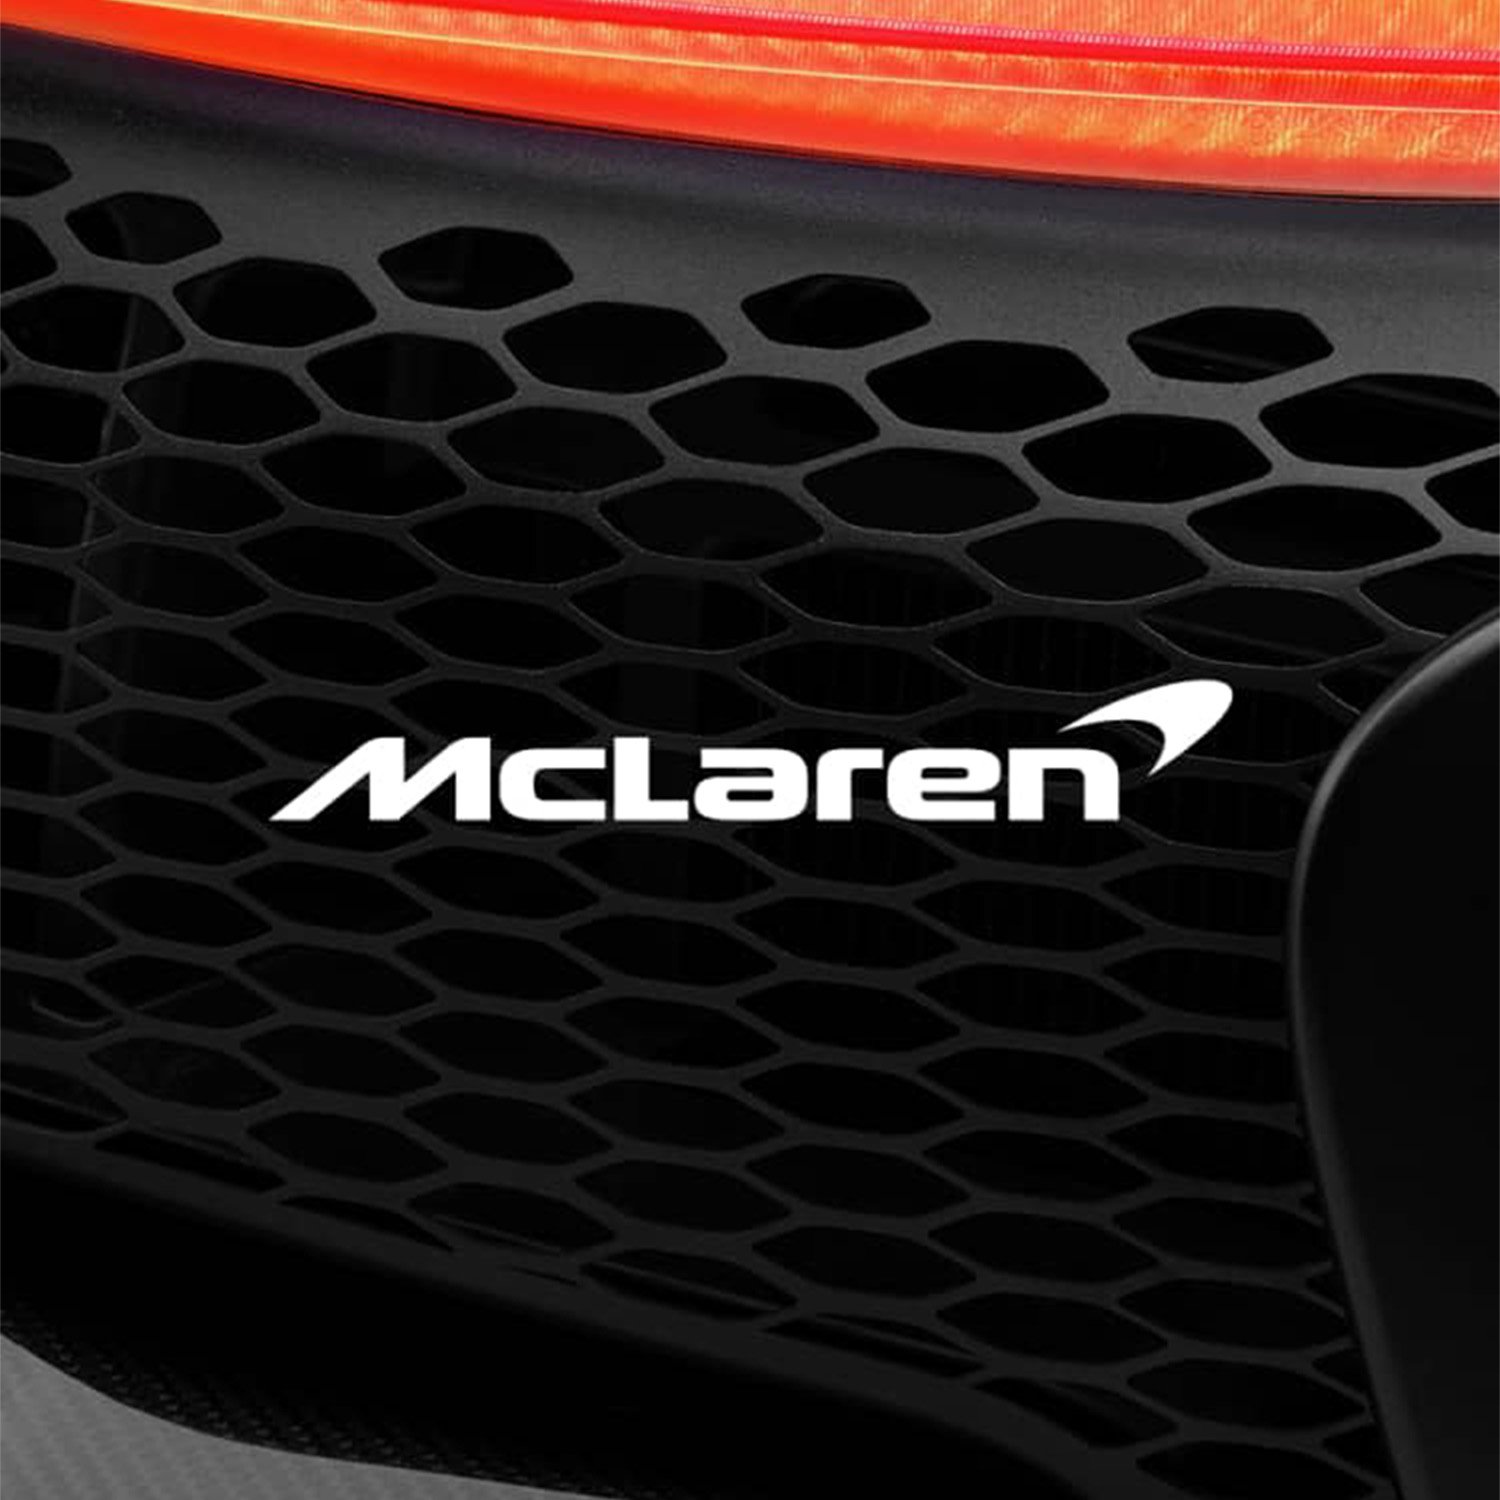 Bowers & Wilkins Px8 McLaren Edition Wireless Headphones Race